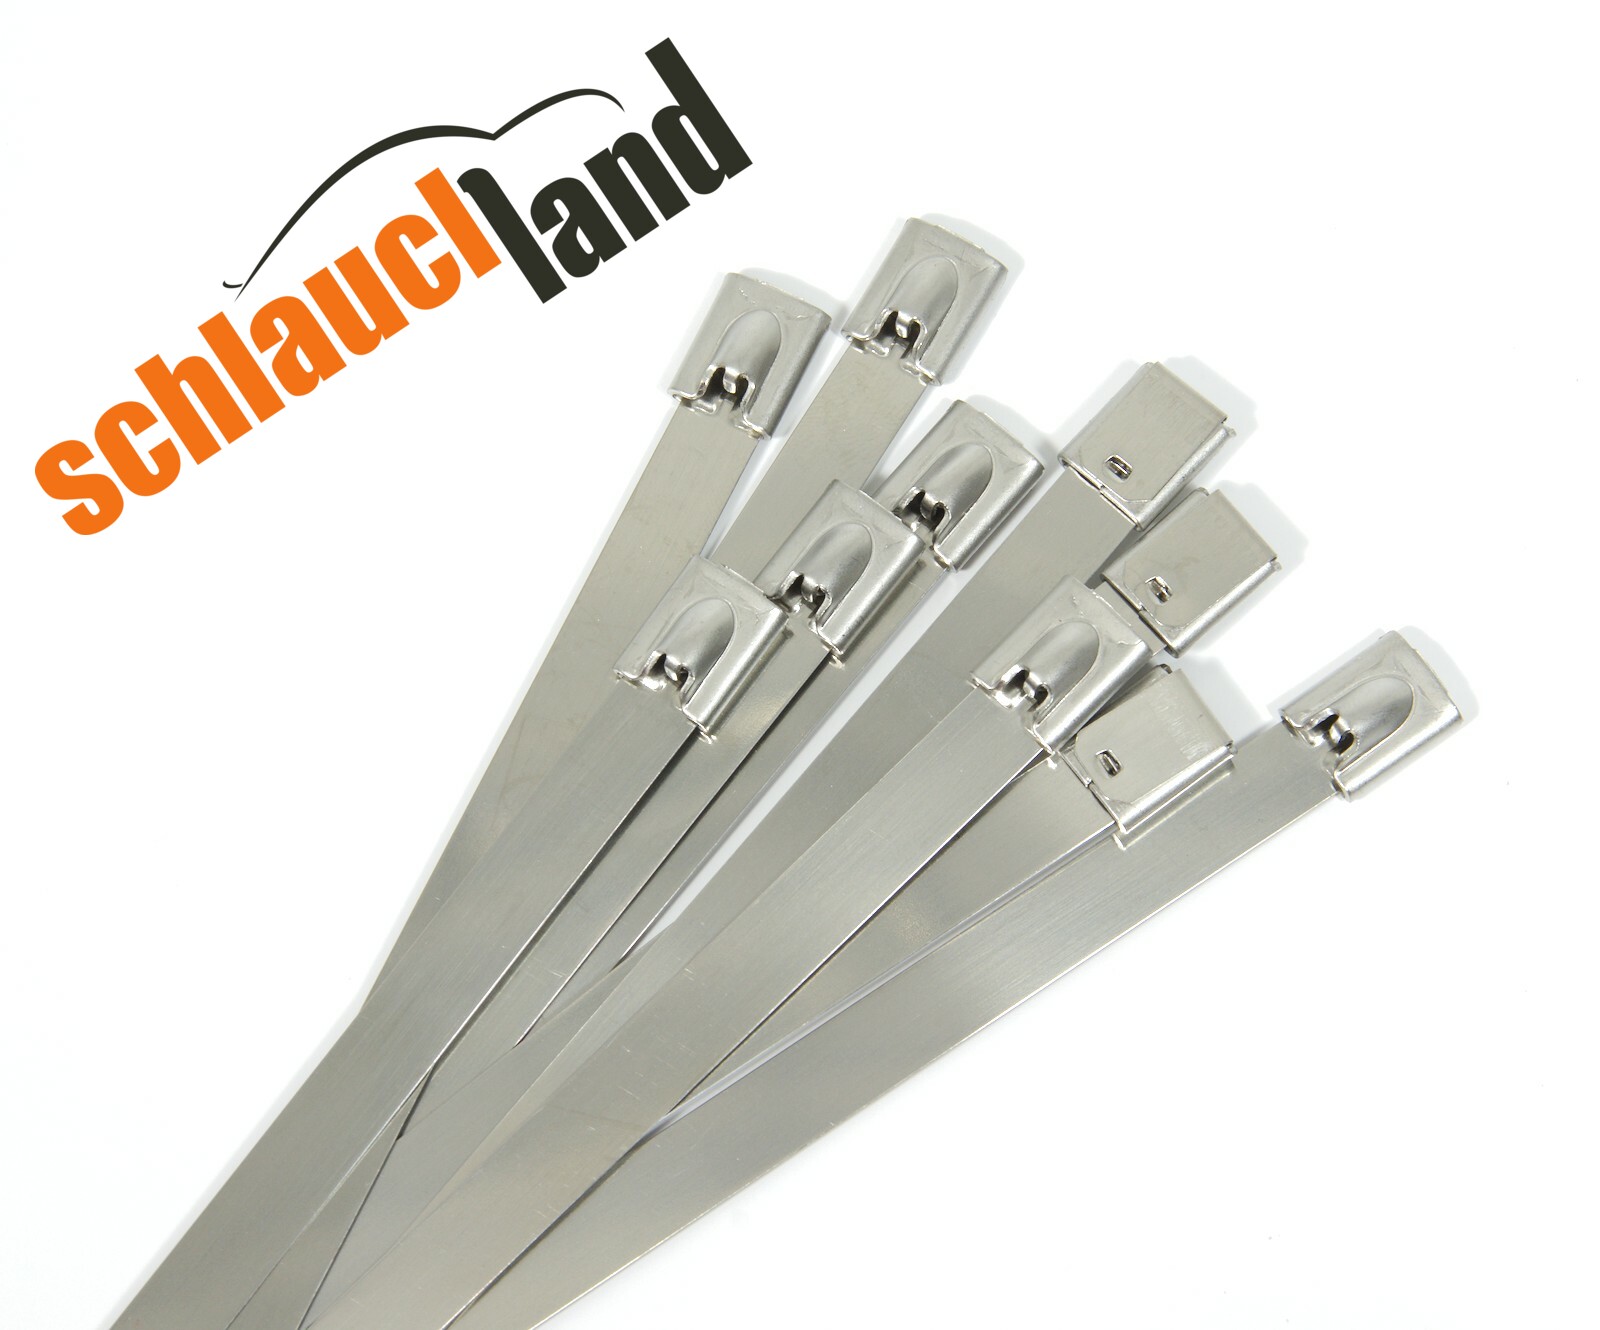 Metall einstellbar Schlauchschelle Schlauchklemme Clip 10pcs 6-12mm Lochdmr 